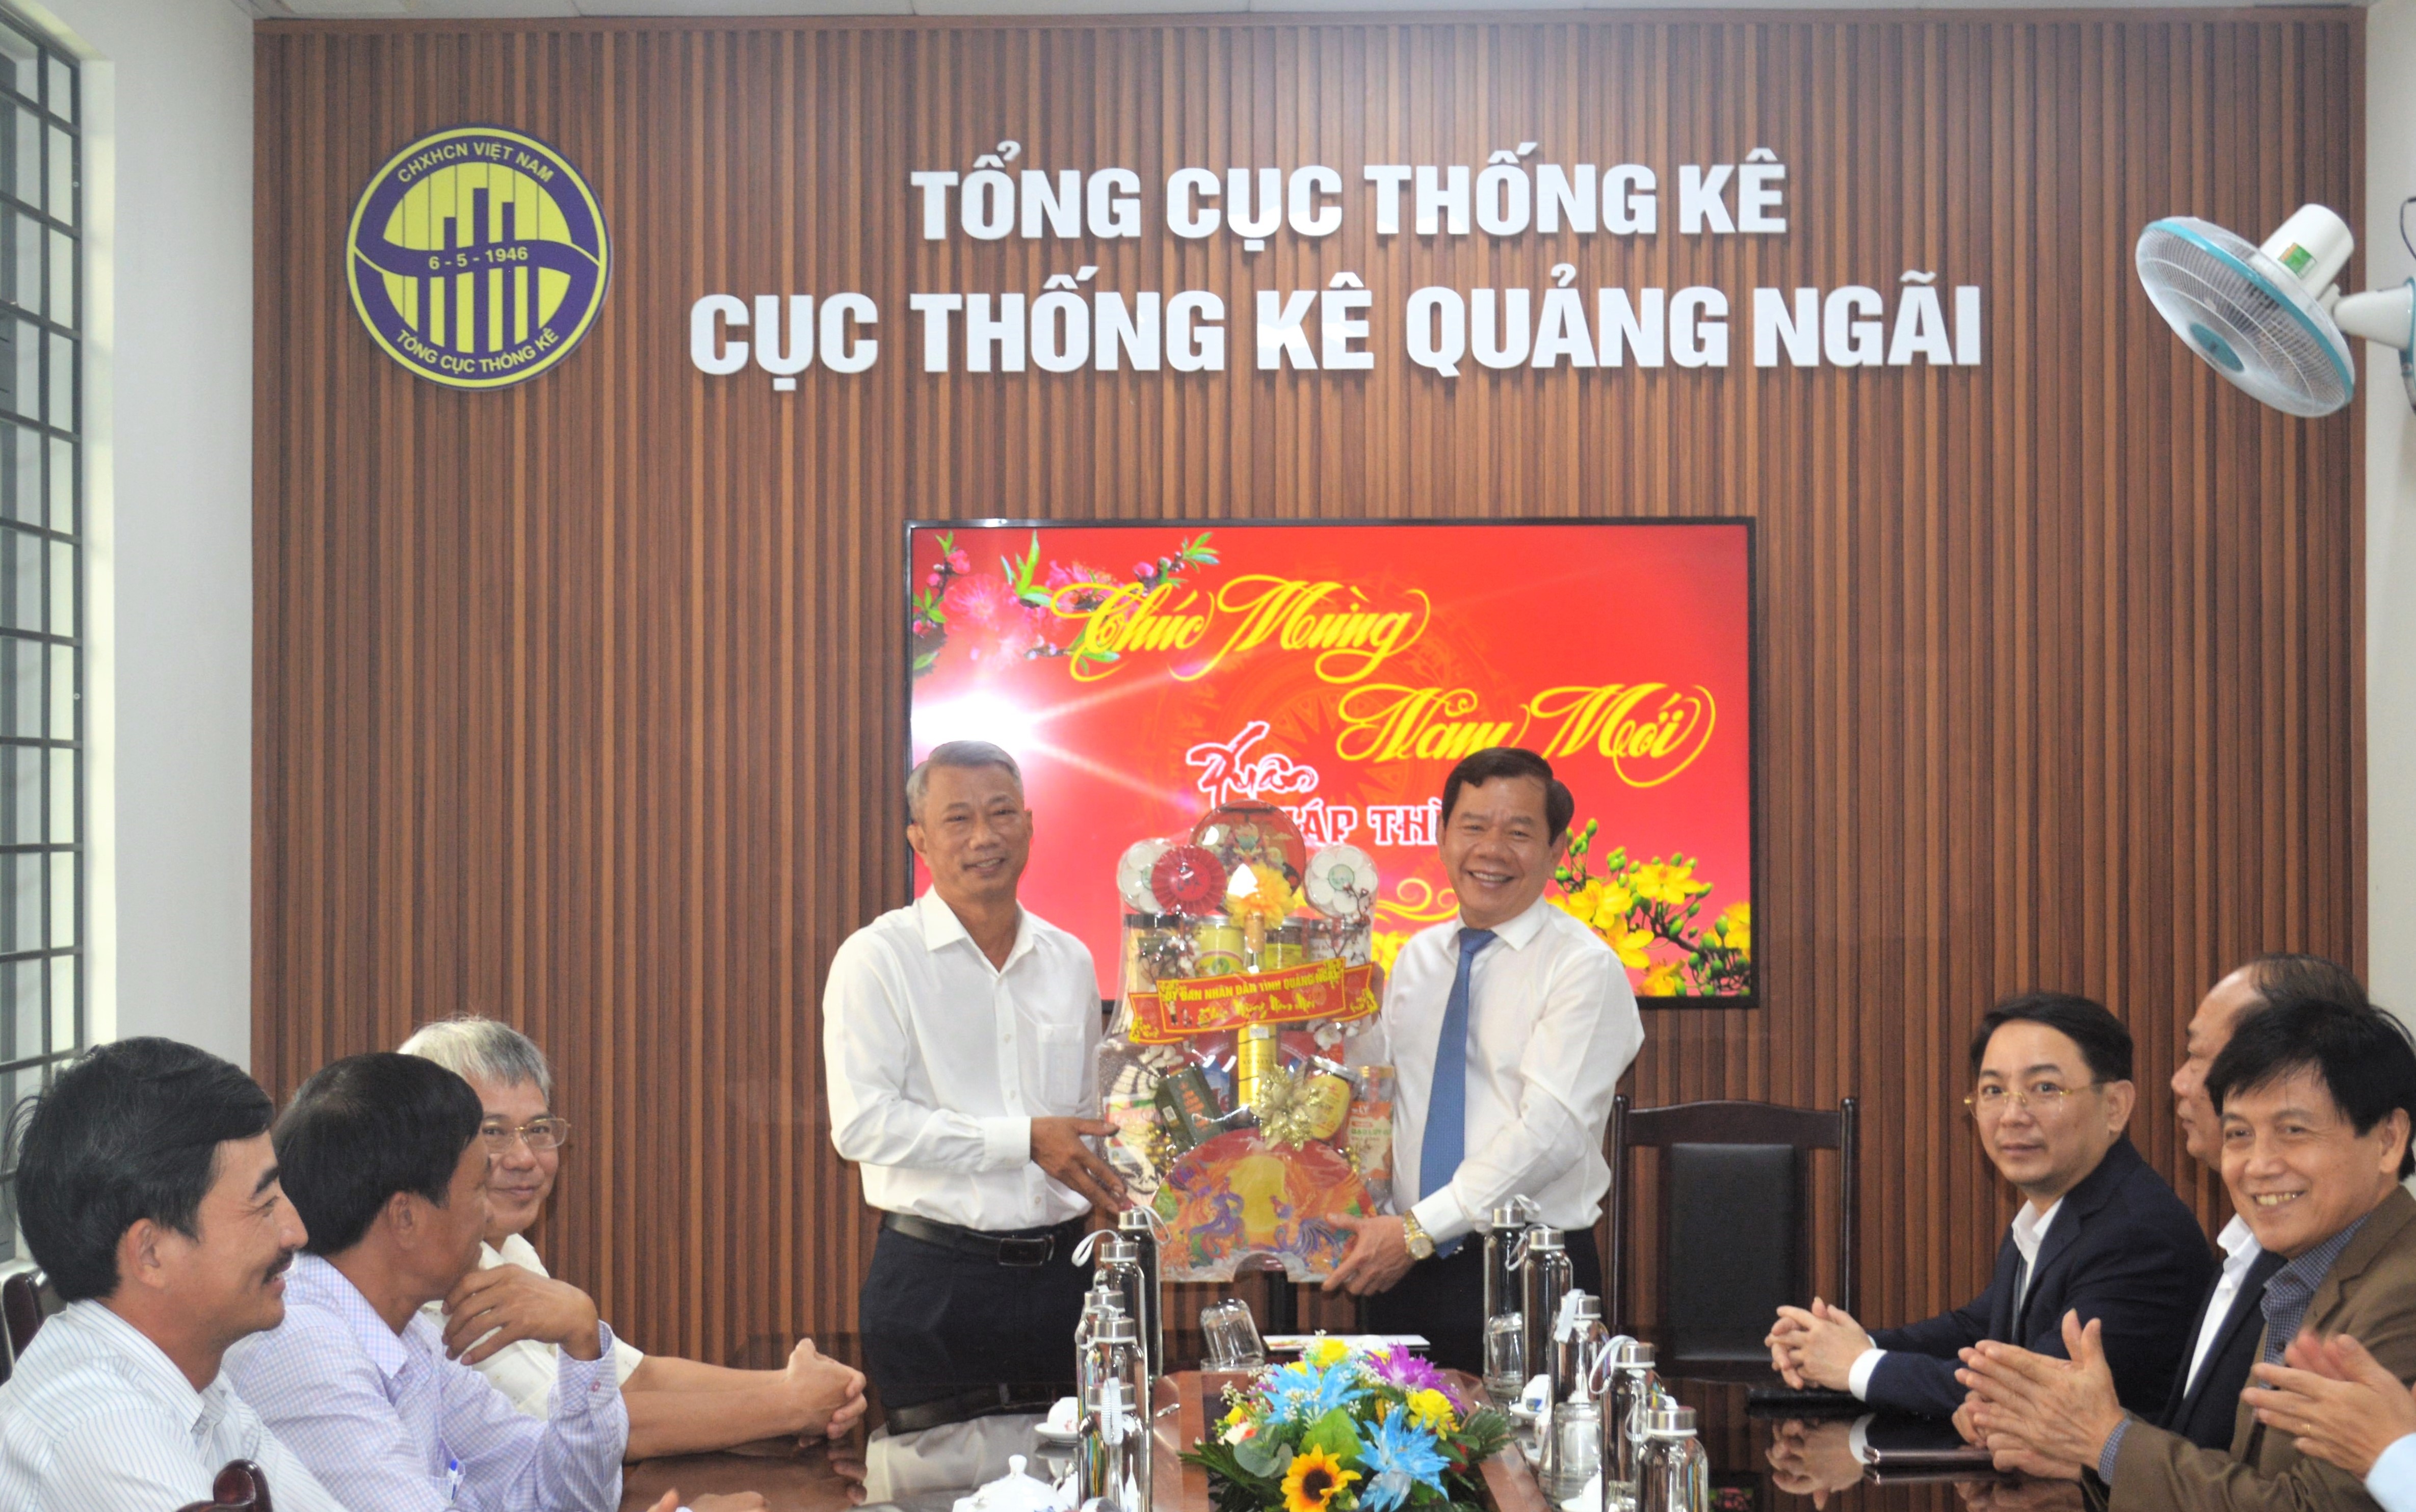 Chủ tịch UBND tỉnh Quảng Ngãi Đặng Văn Minh thăm, chúc tết tại Cục Thống kê tỉnh